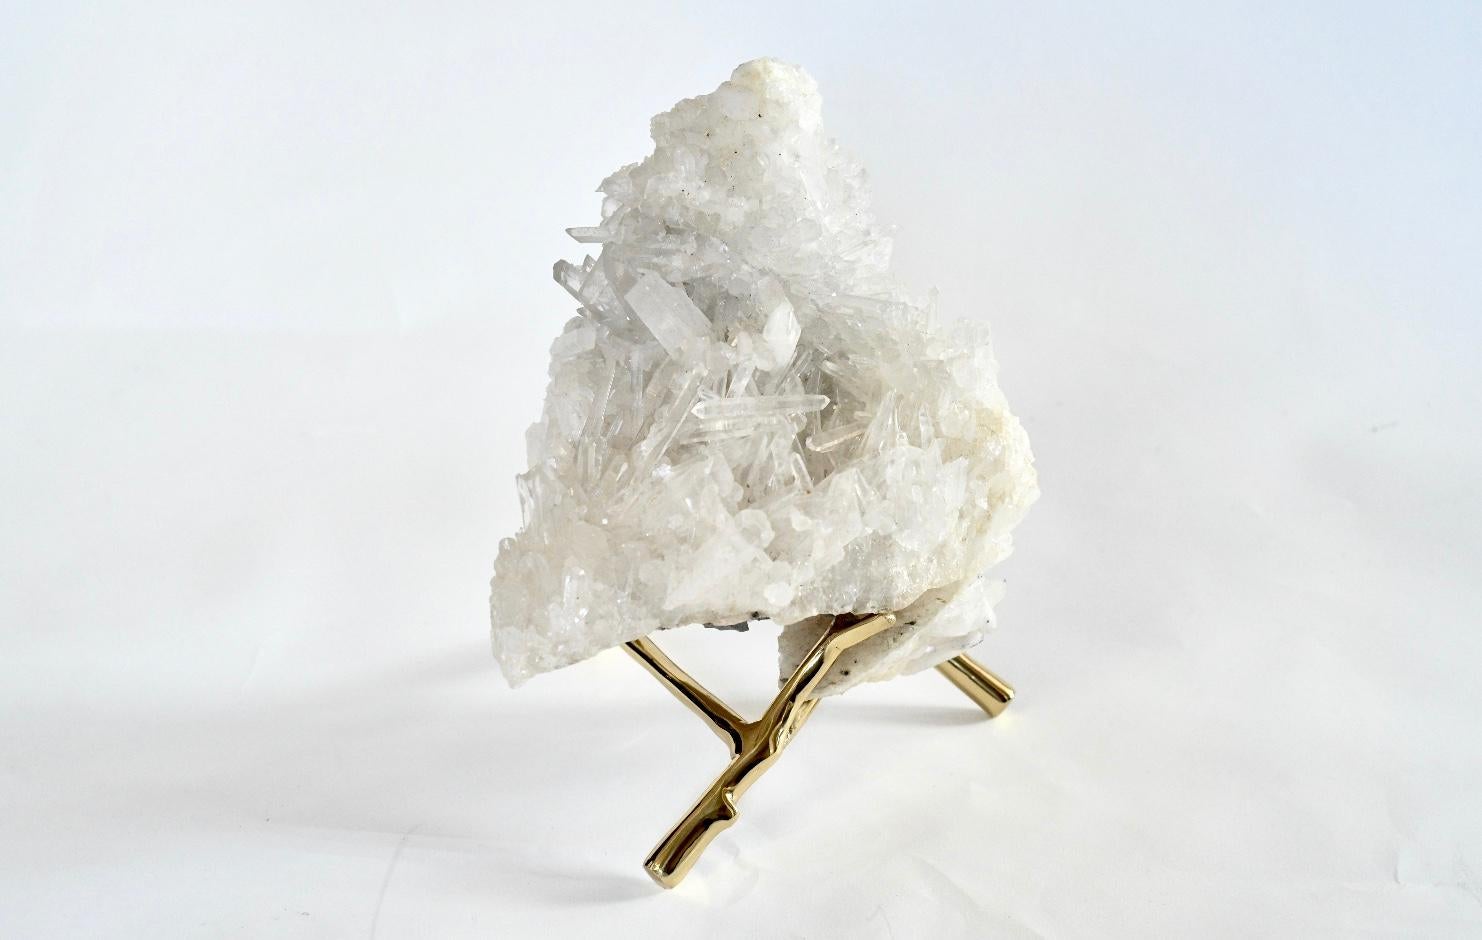 Sculpture en cristal de quartz naturel avec support.
Les dimensions de la sculpture en cristal sont de 9